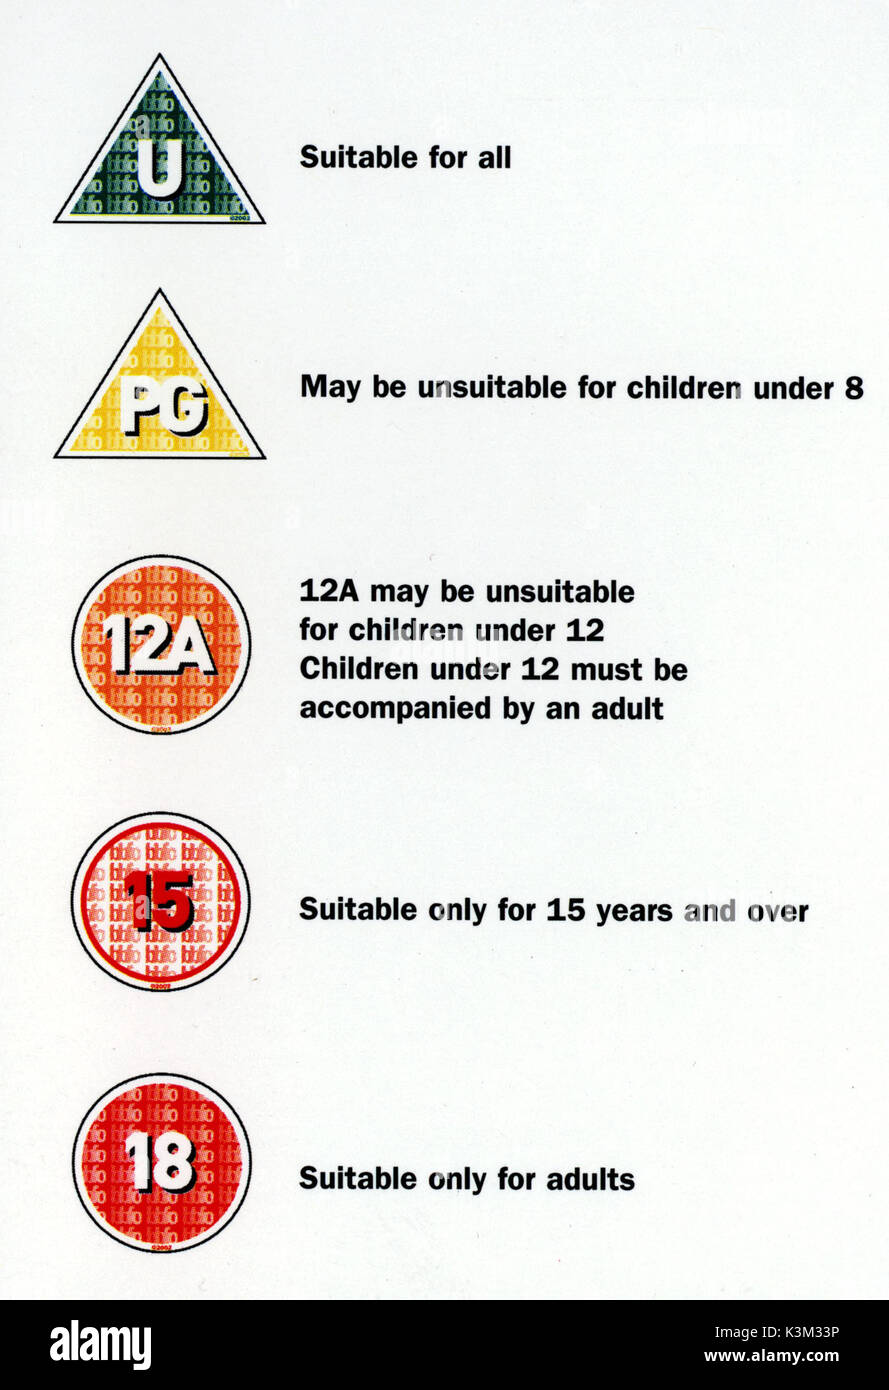 Filmzensur Symbole: U, PG, 12 A (nicht geeignet für Kinder unter 12 Jahren, Kinder unter 12 Jahren müssen von einem Erwachsenen begleitet werden), 15 (nur geeignet für 15 Jahre und älter), 18 (nur für Erwachsene). Stockfoto